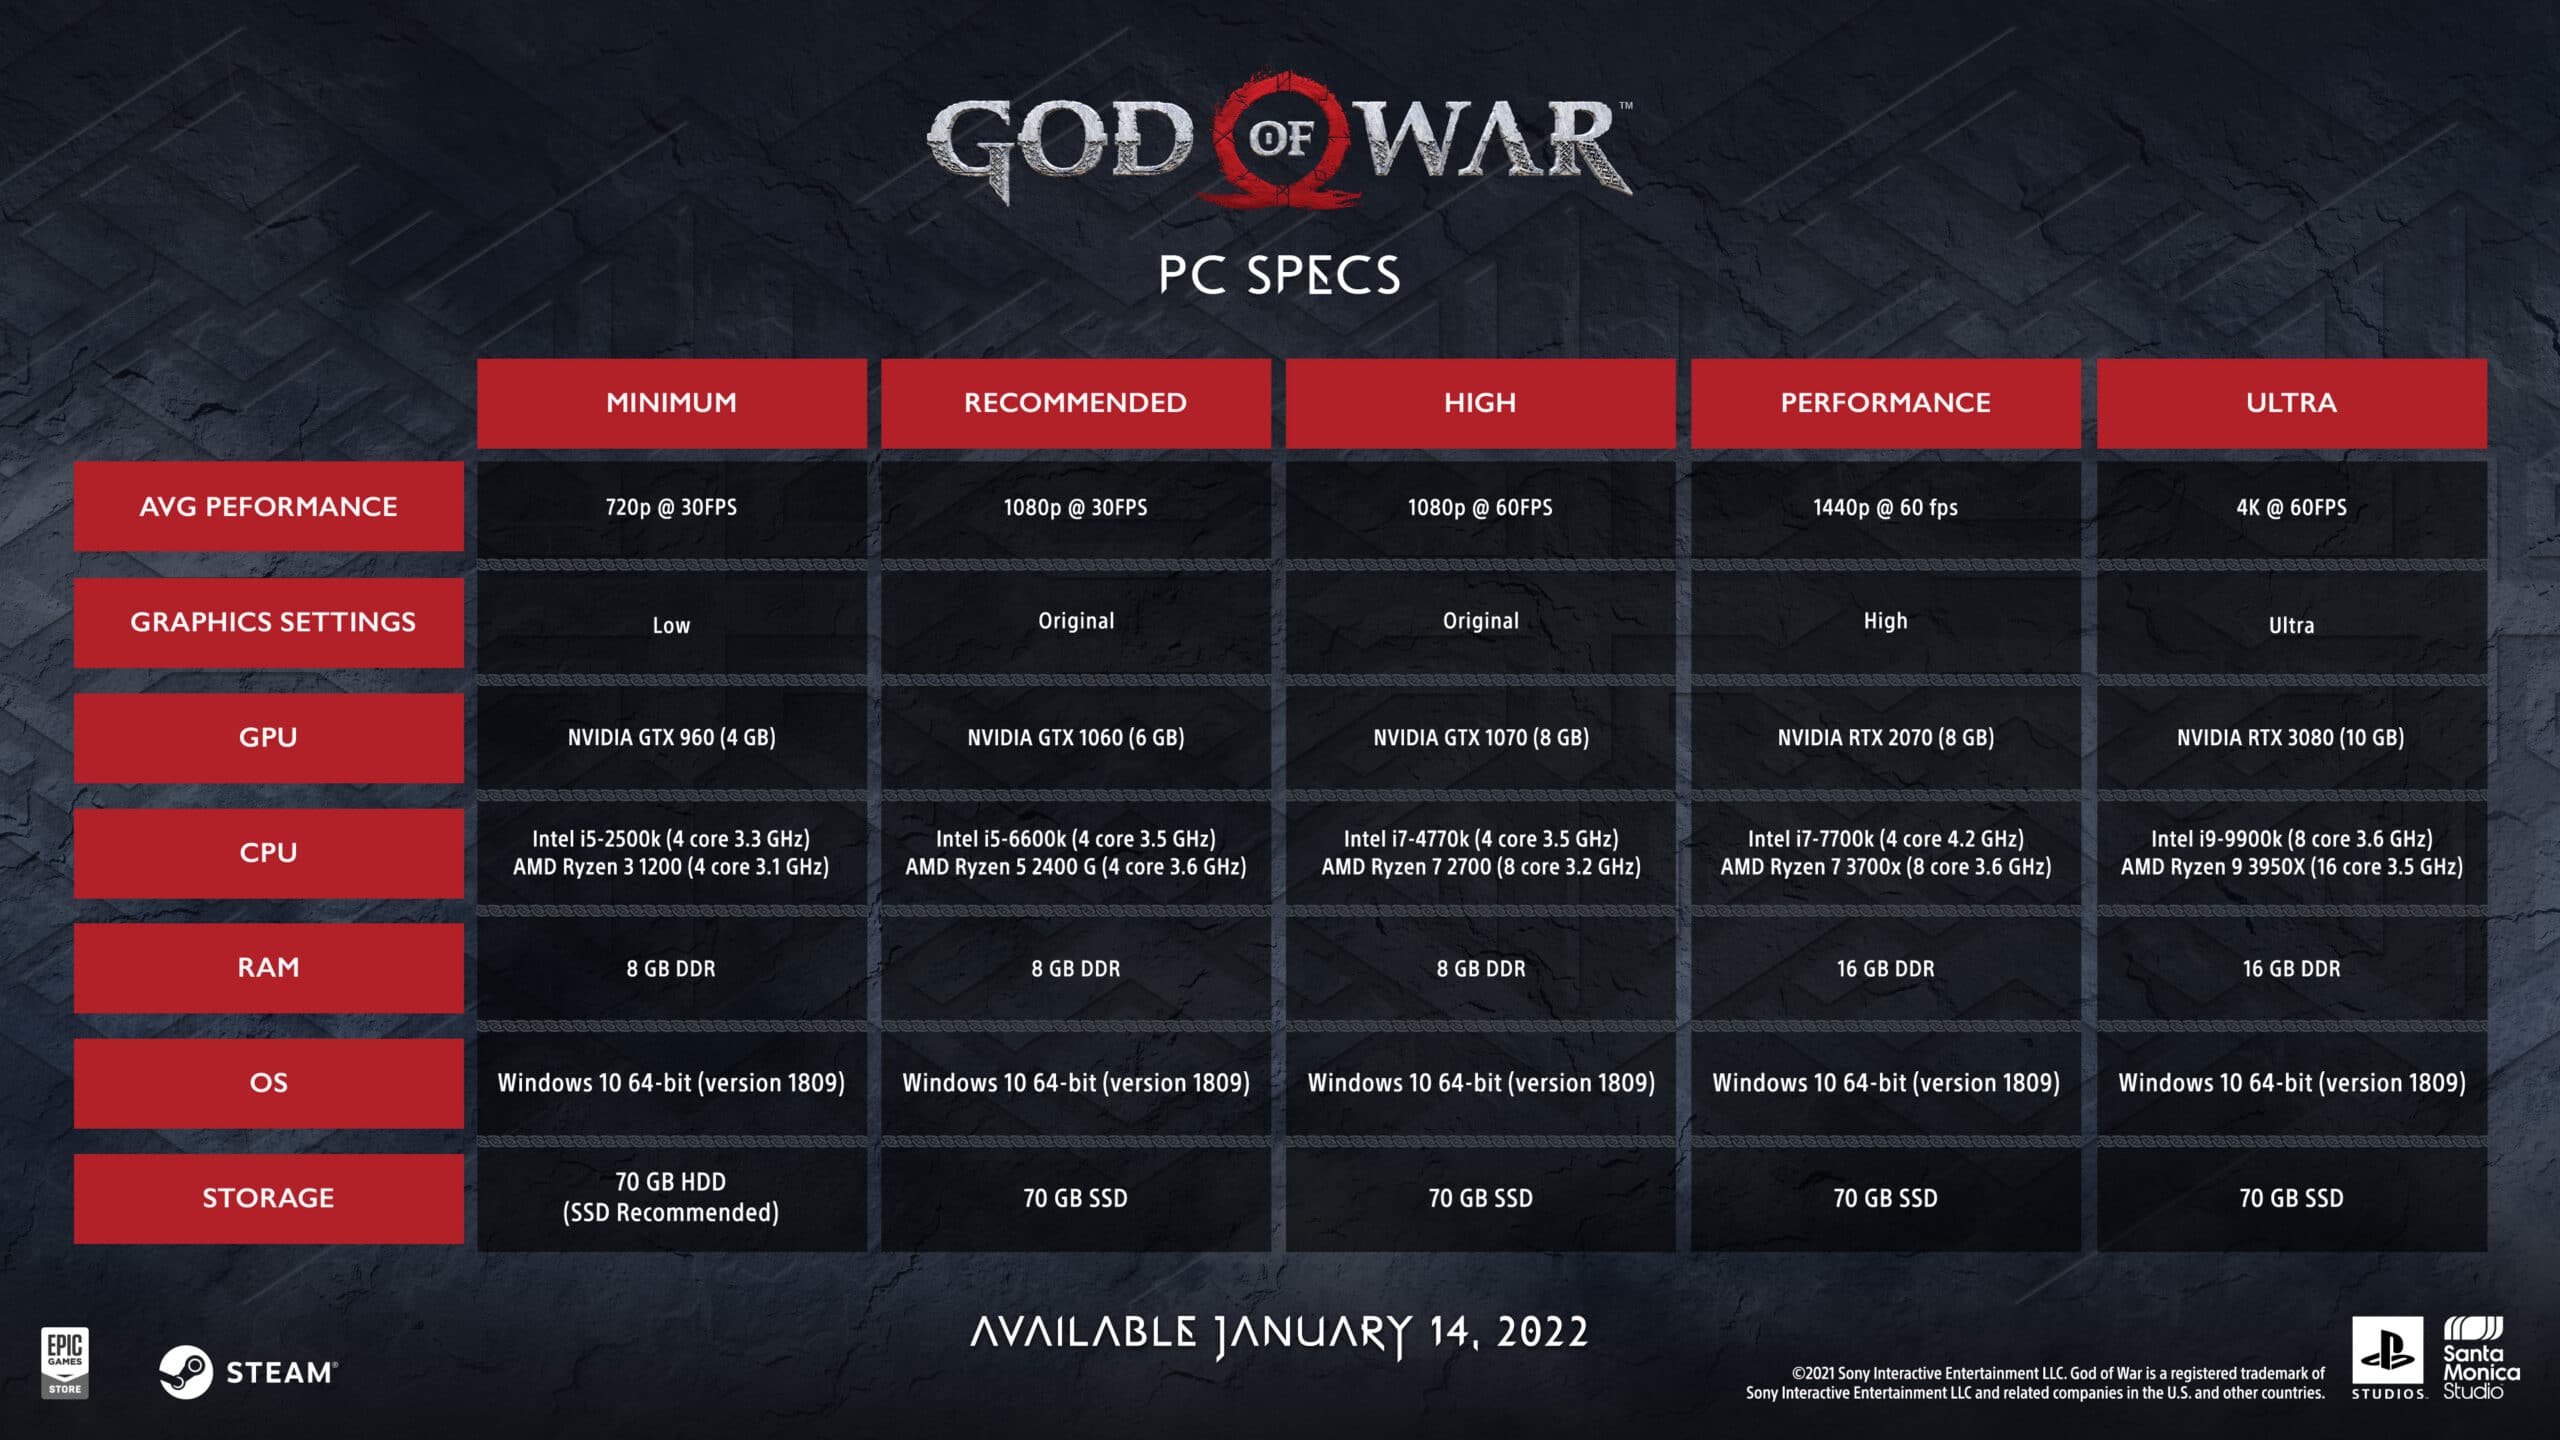 God of War PC - Requisitos mínimos e requisitos recomendados